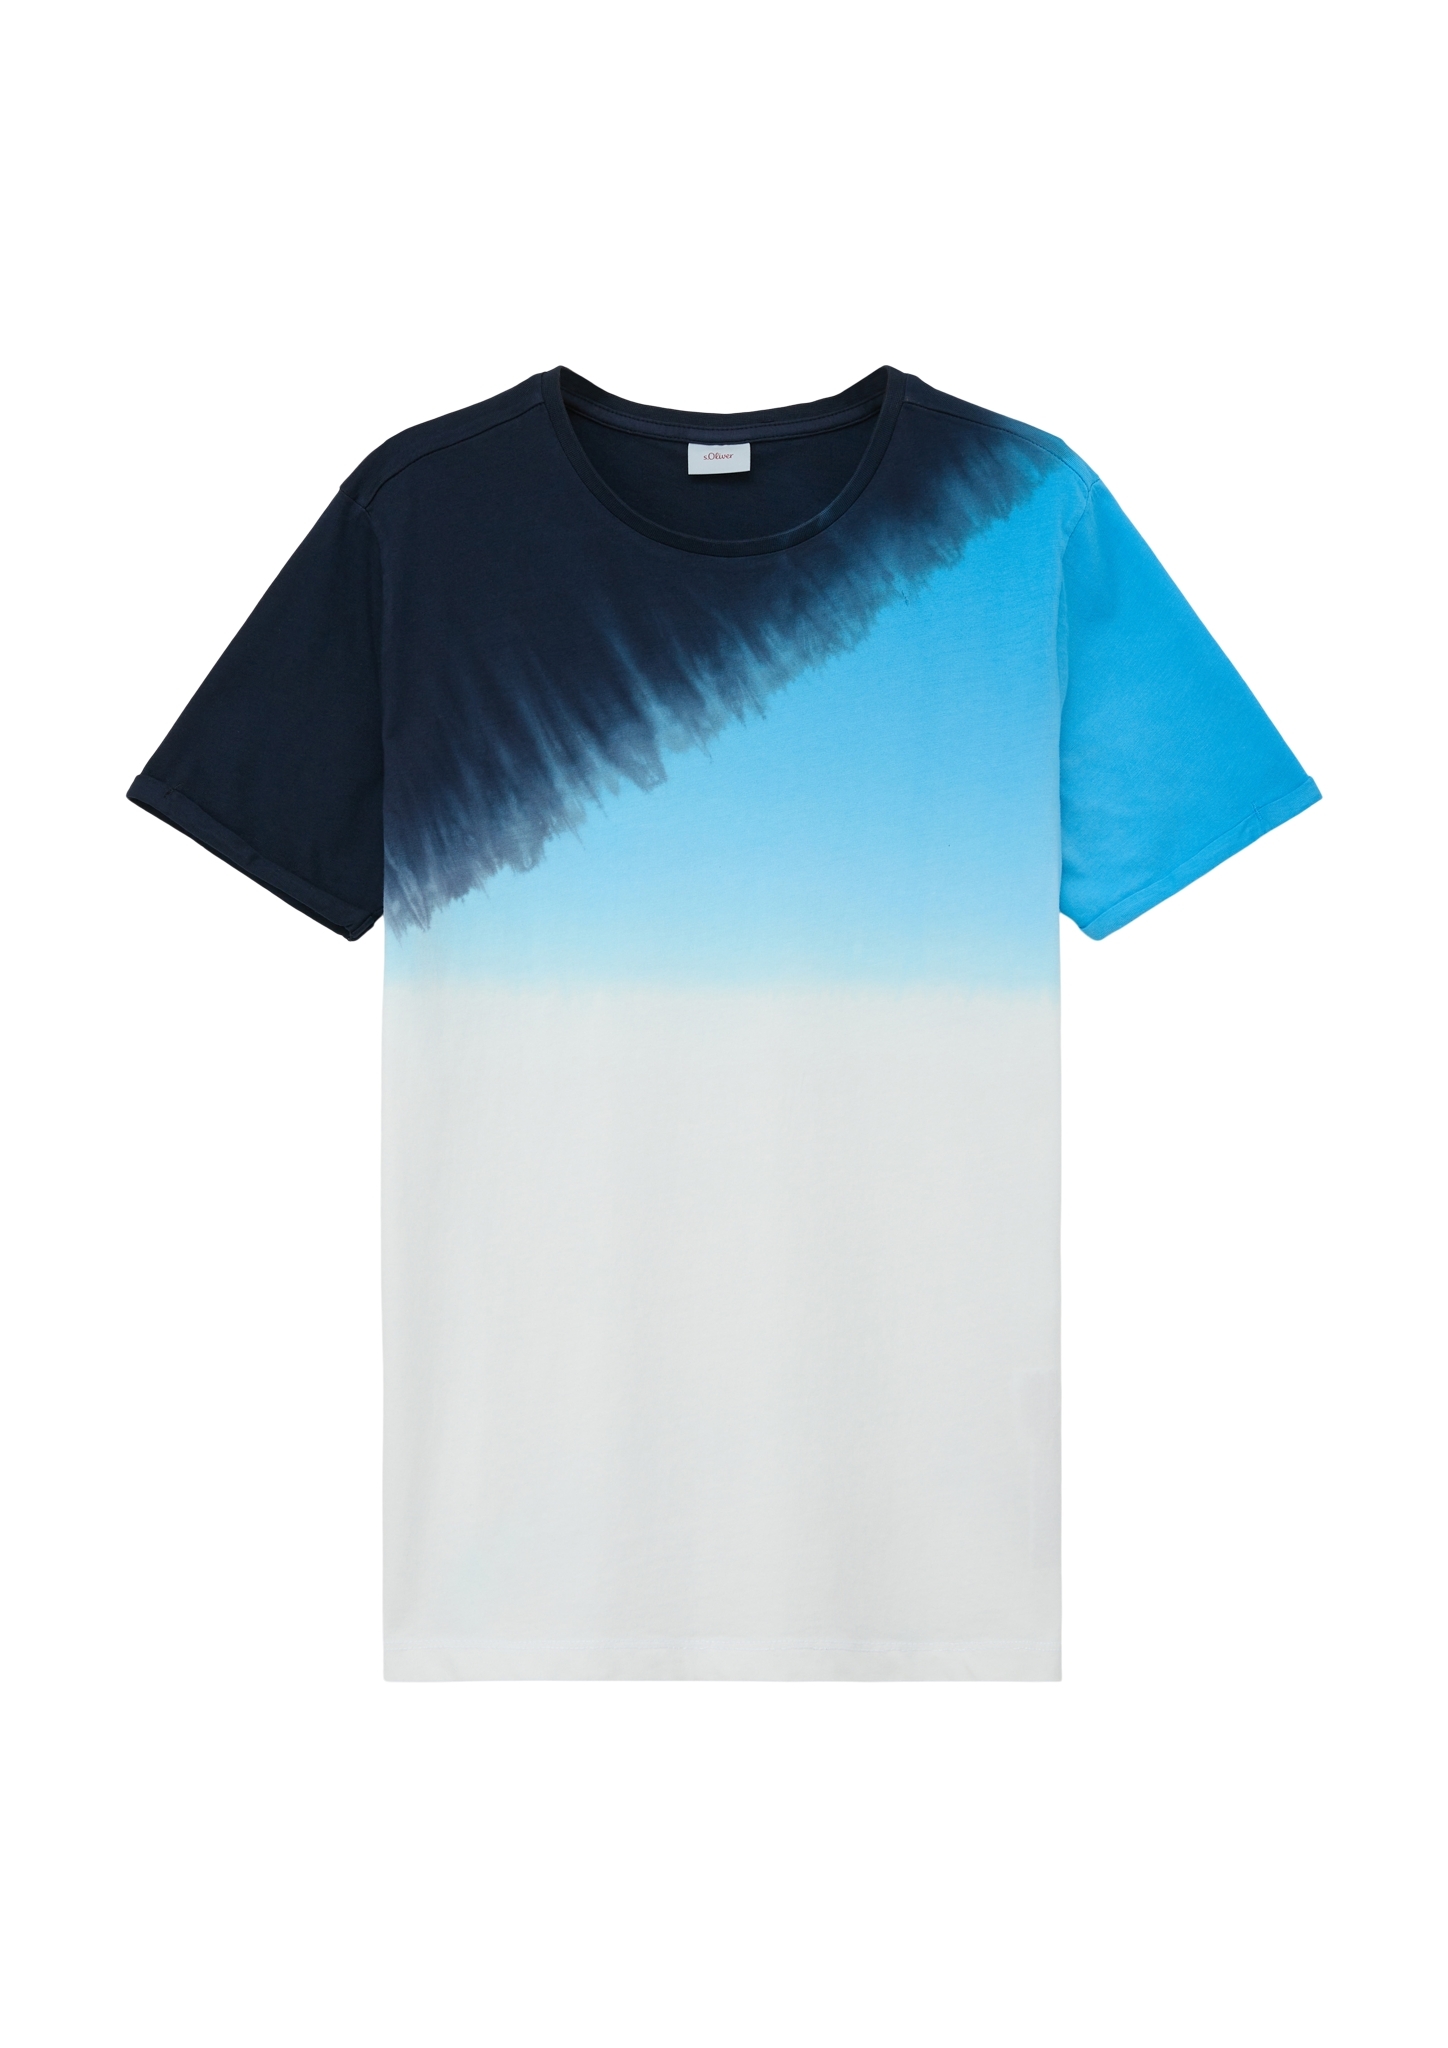 S.OLIVER mit kaufen | T-Shirt Dye Dip WÖHRL 10706921